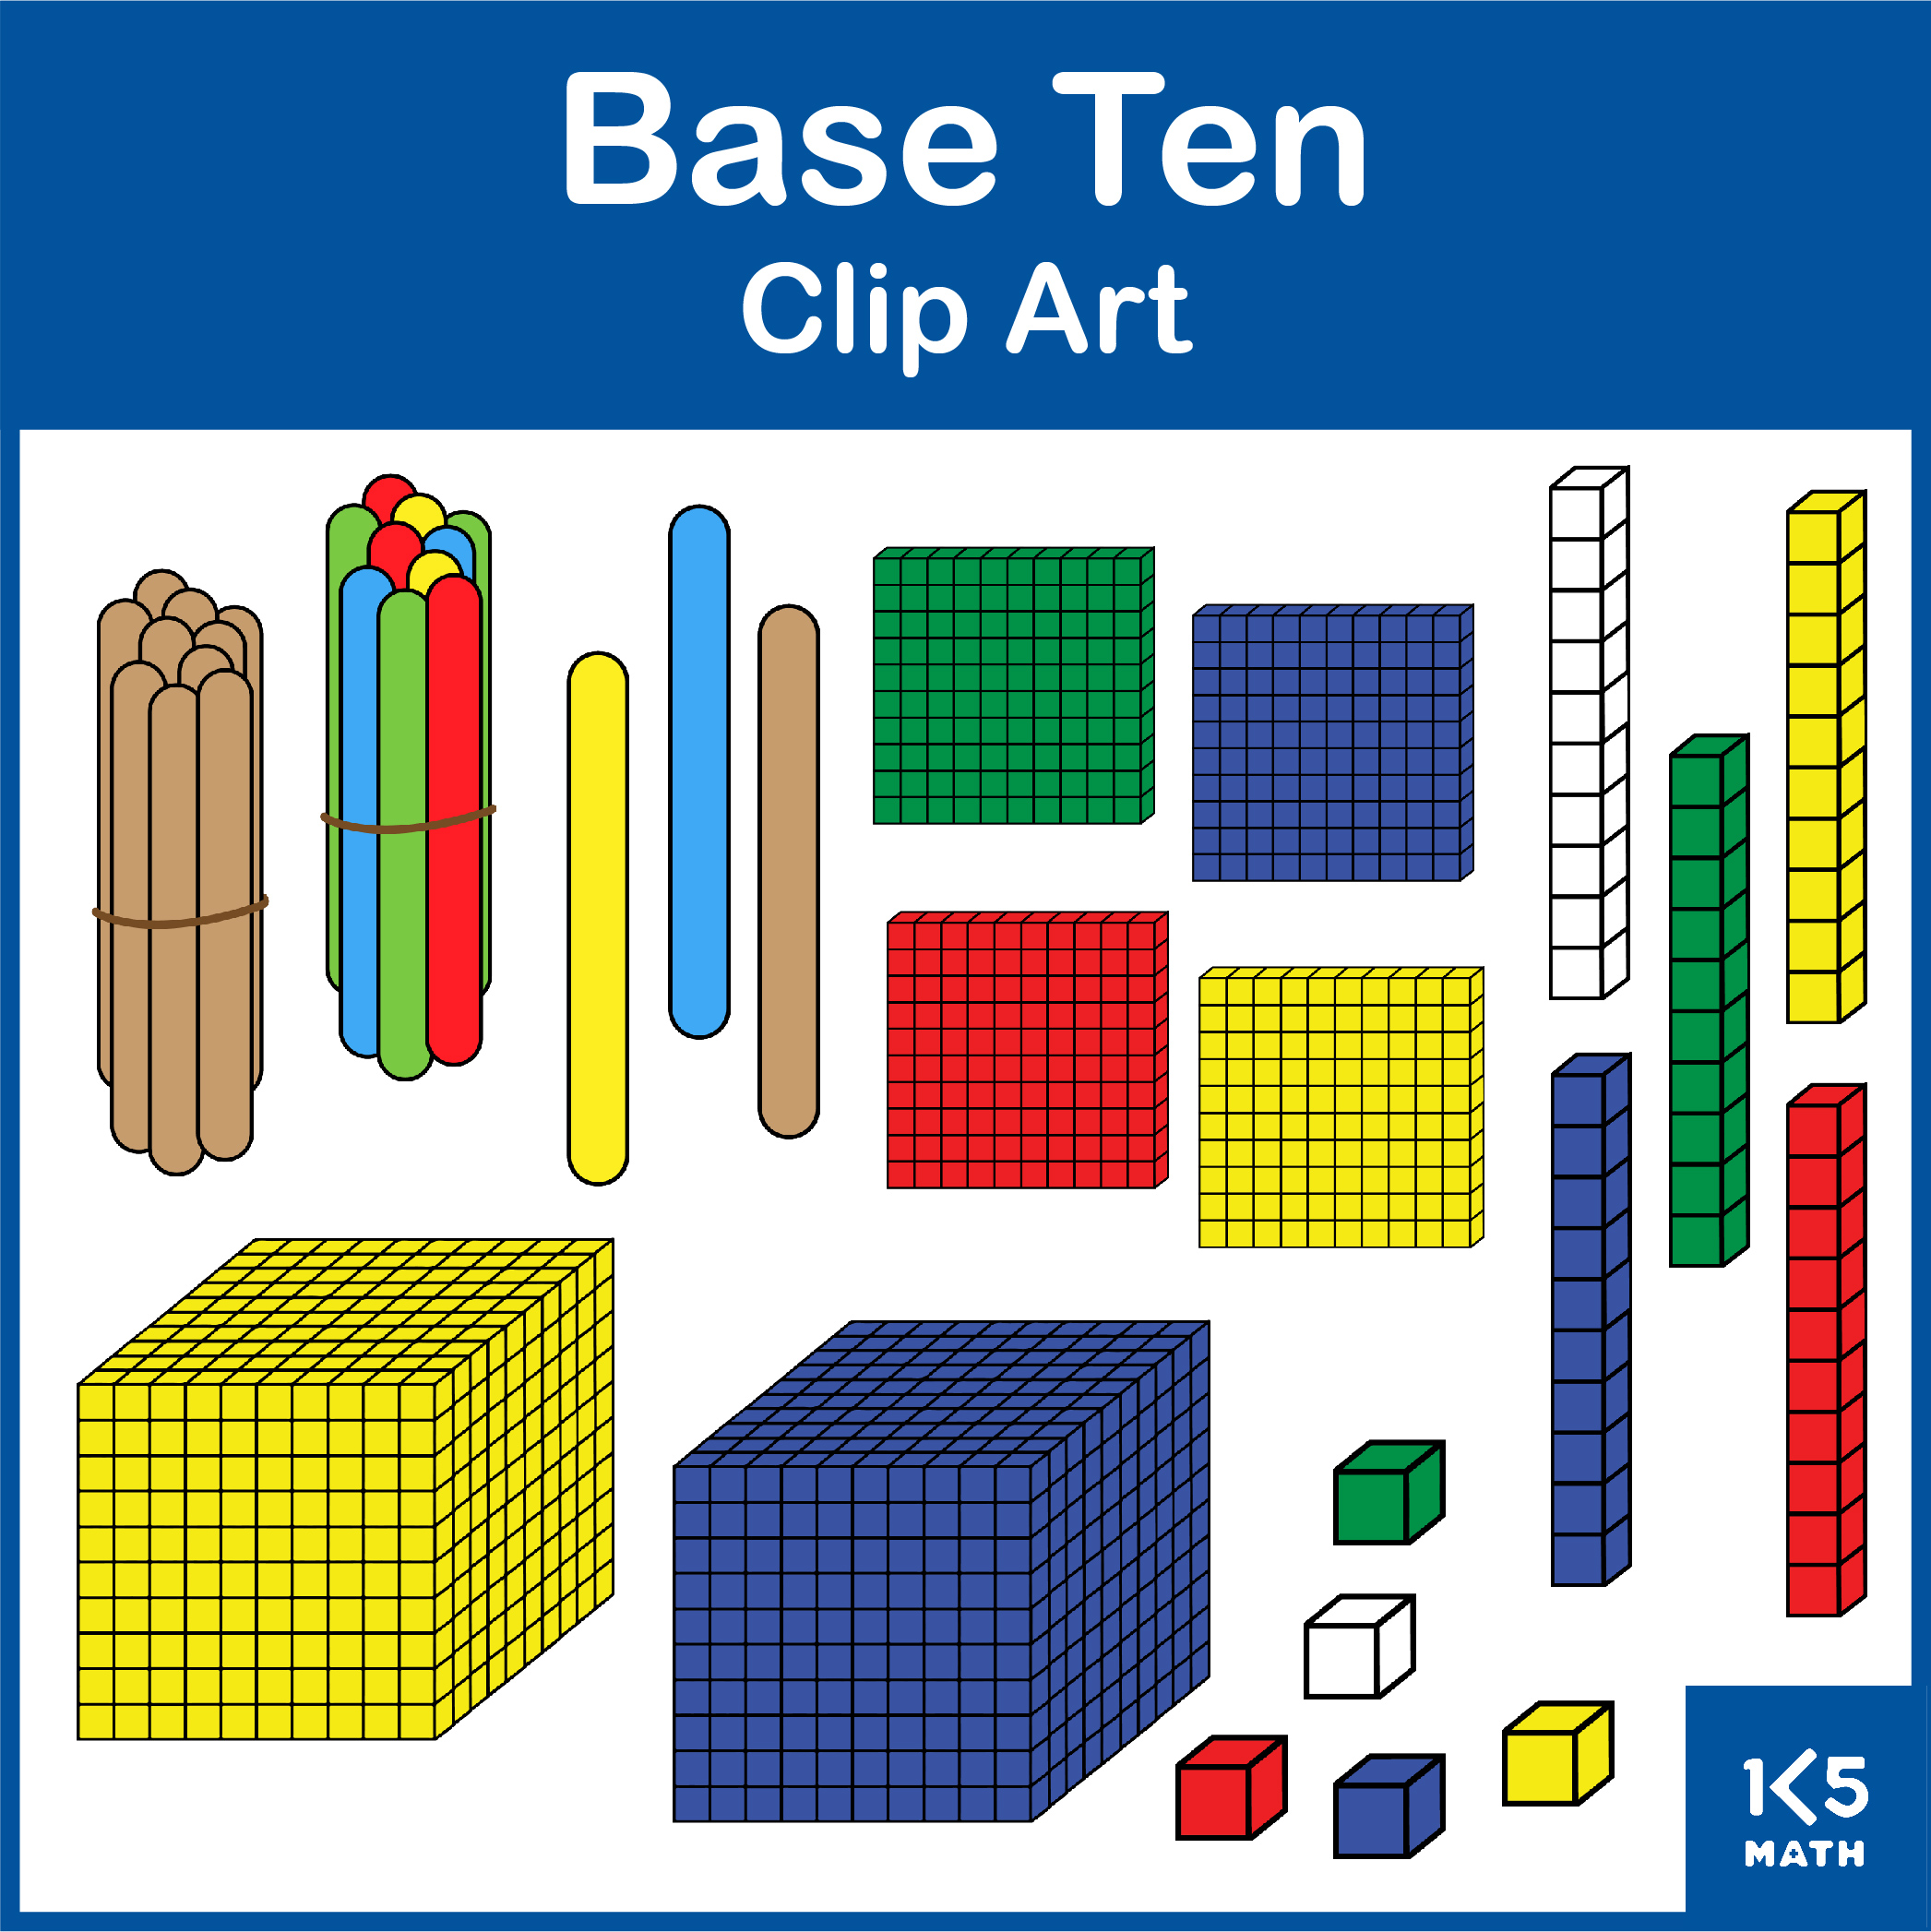 Base Ten Clip Art